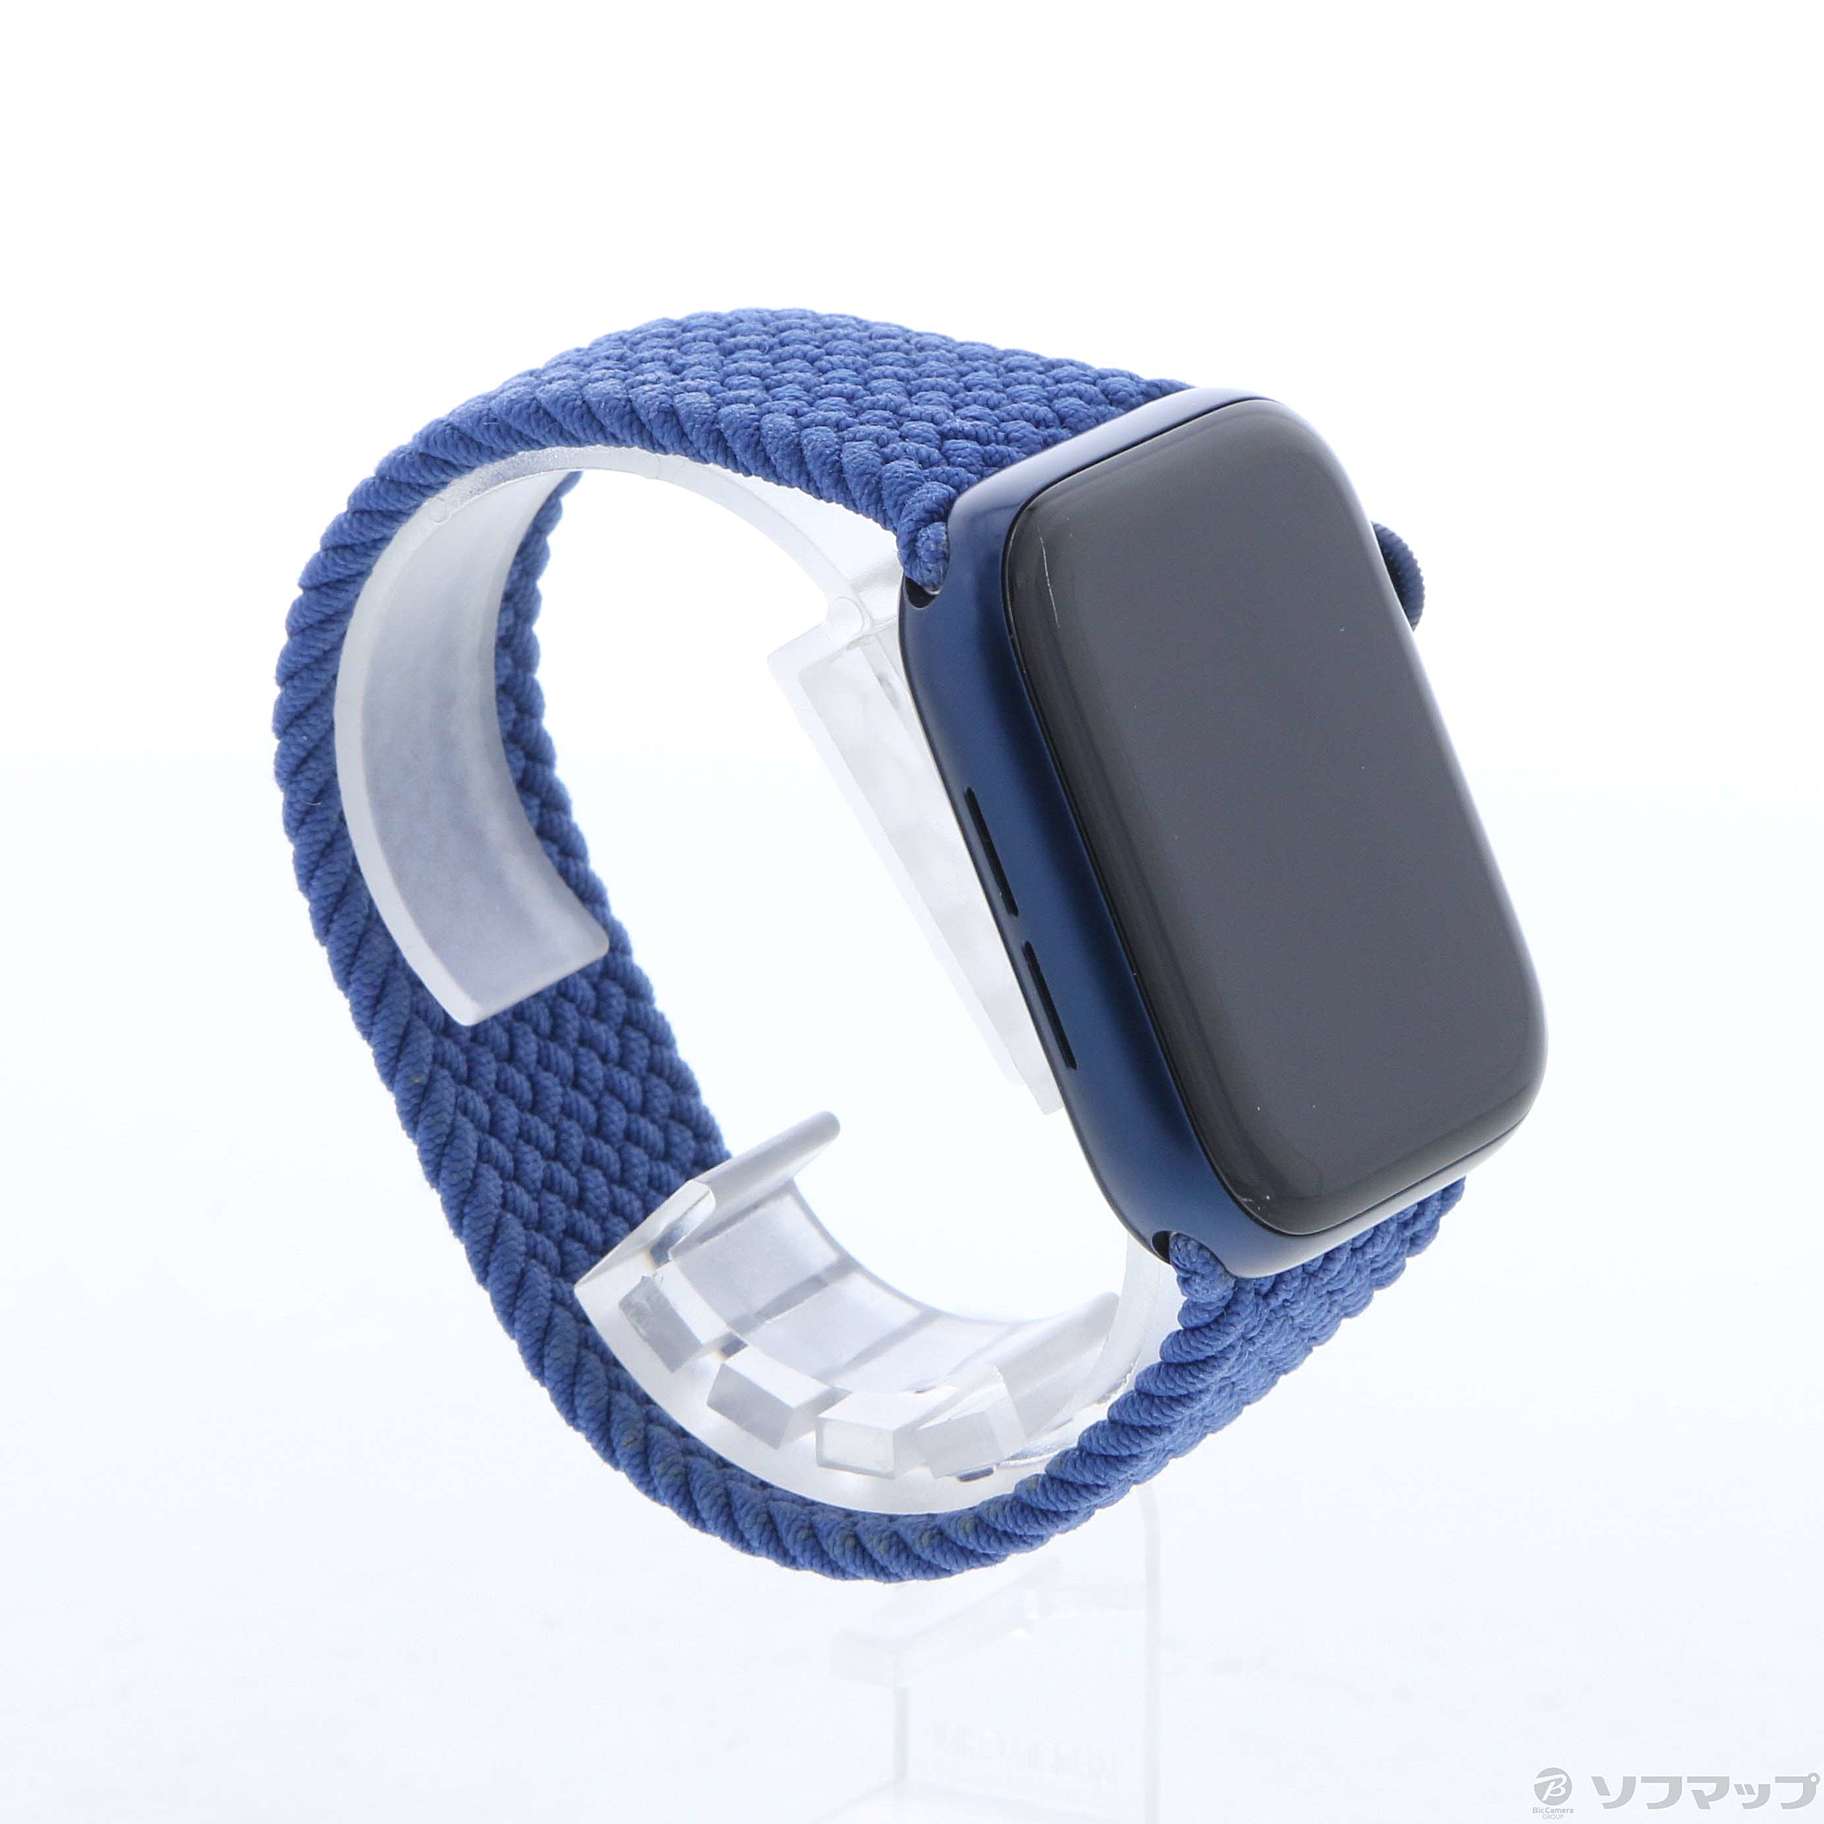 中古】Apple Watch Series 6 GPS 44mm ブルーアルミニウムケース ...